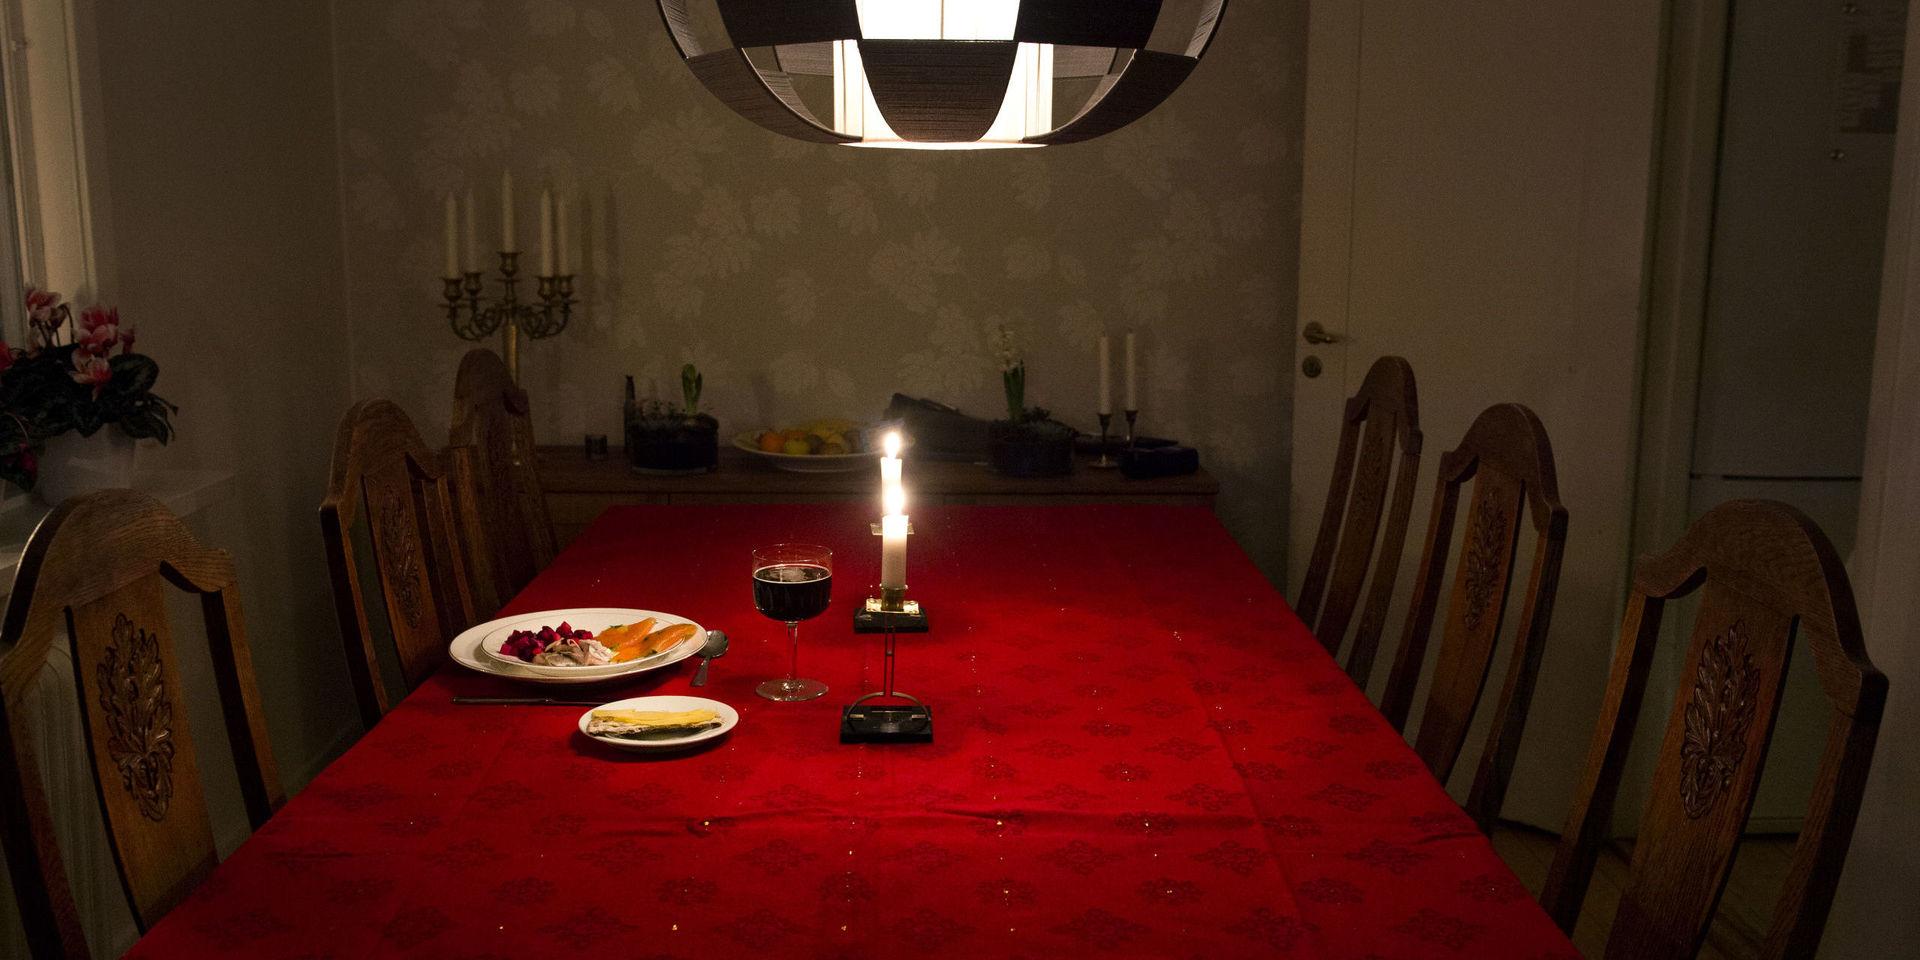 STOCKHOLM 2013-12-16
Ensam på julen. Bild som illustrerar hur det är att äta julmat utan sällskap.  
Foto: Lars Pehrson / SvD / TT / Kod 30152
** OUT DN och Dagens Industri (även arkiv) och Metro**  